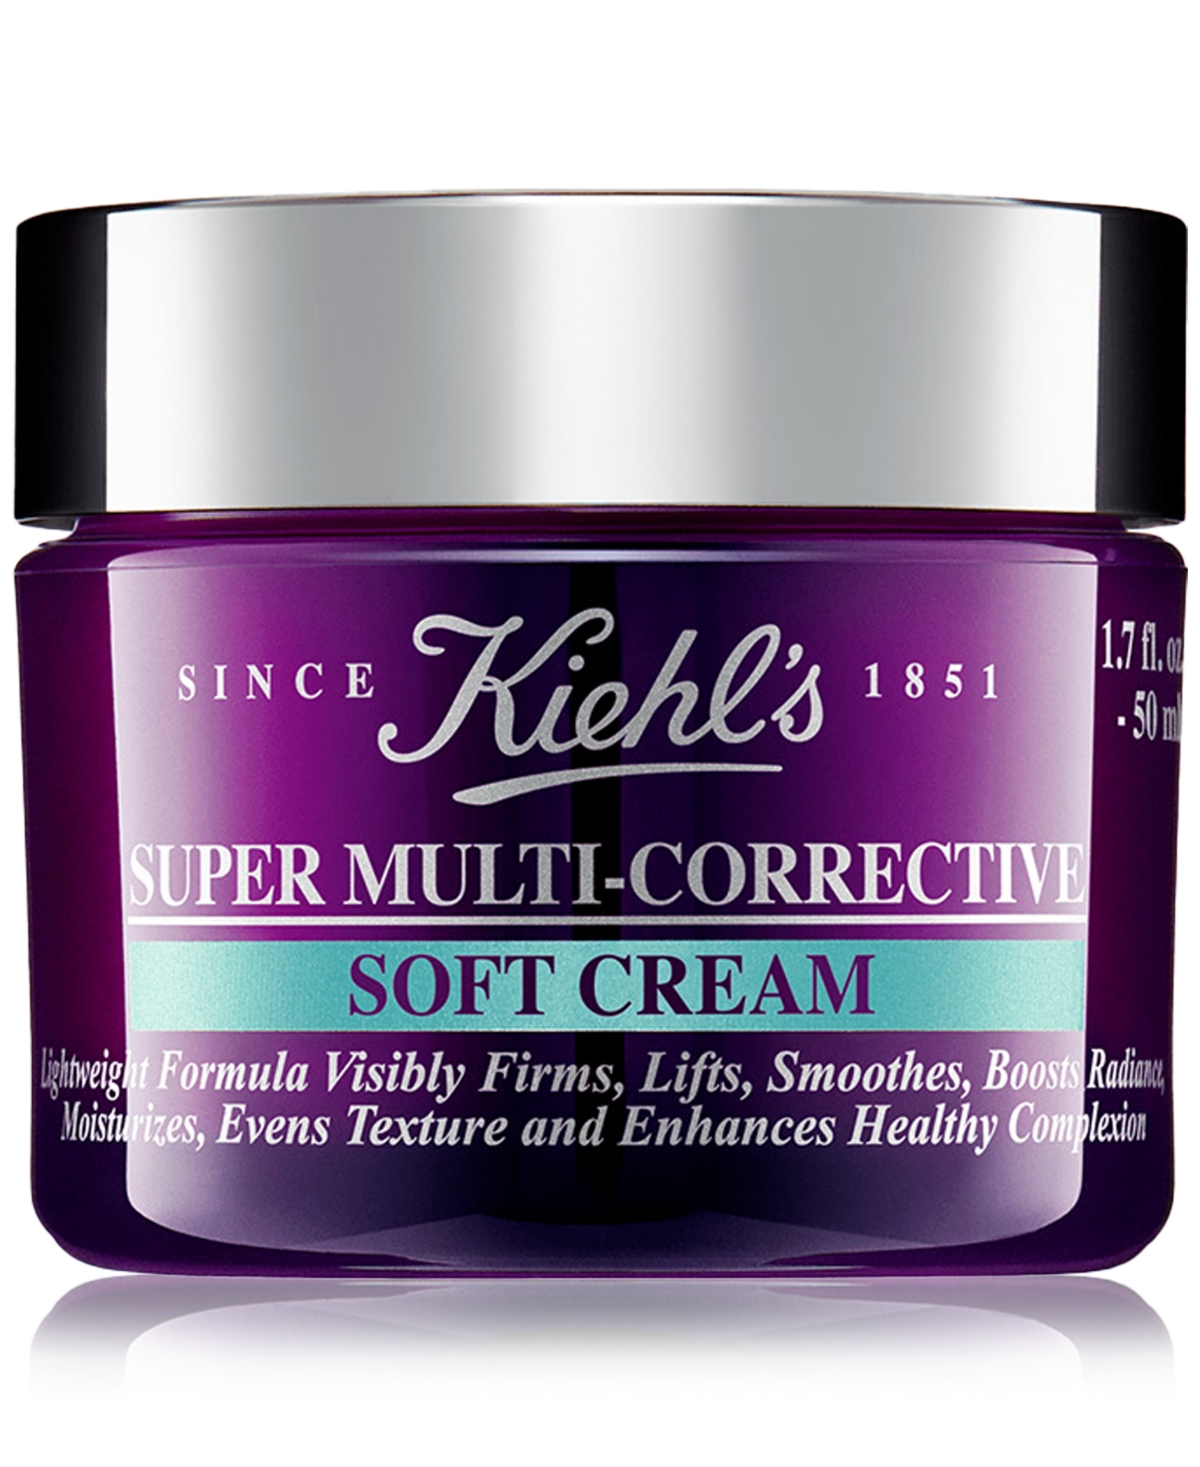 Super Multi-Corrective Anti-Aging Face & Neck Soft Cream, 1.7 oz.